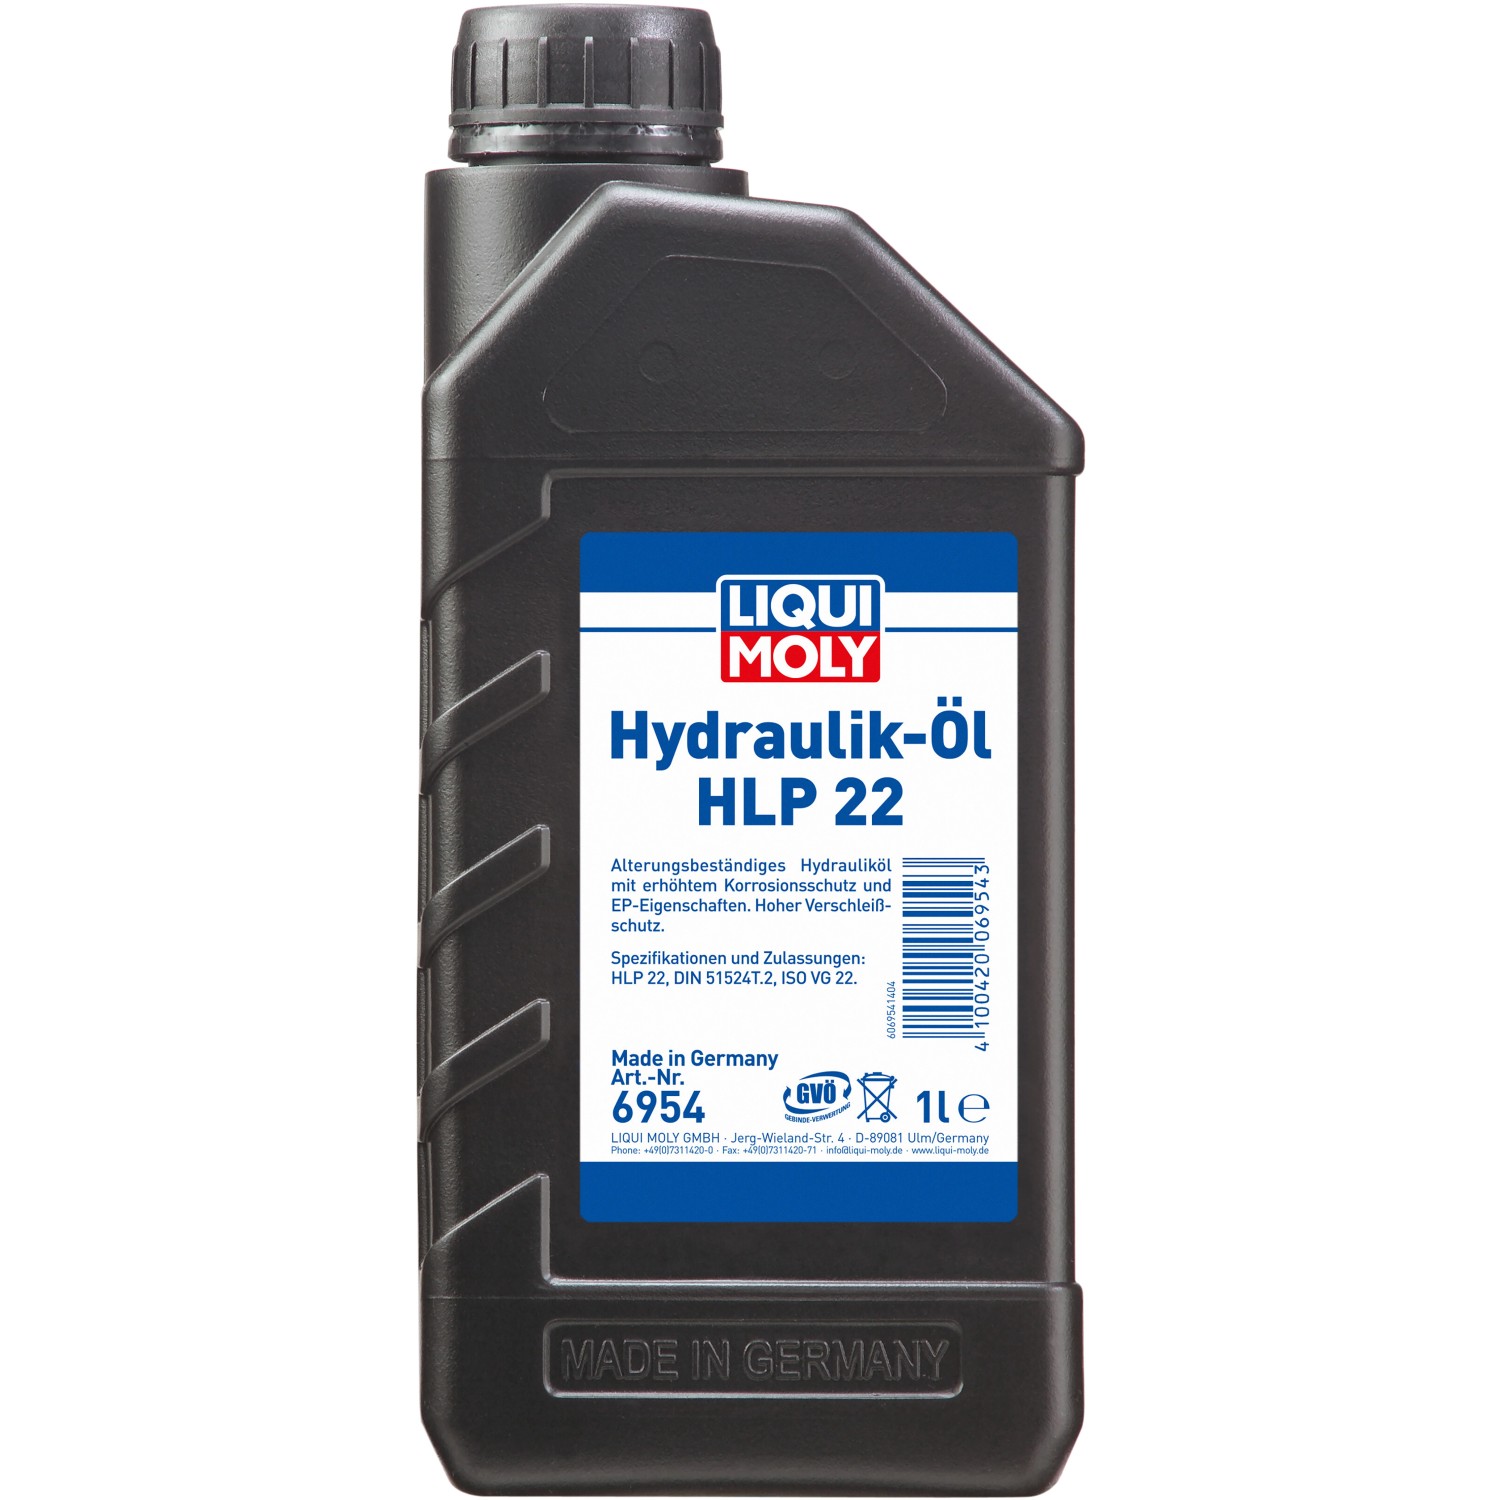 Hydrauliköl kaufen bei OBI